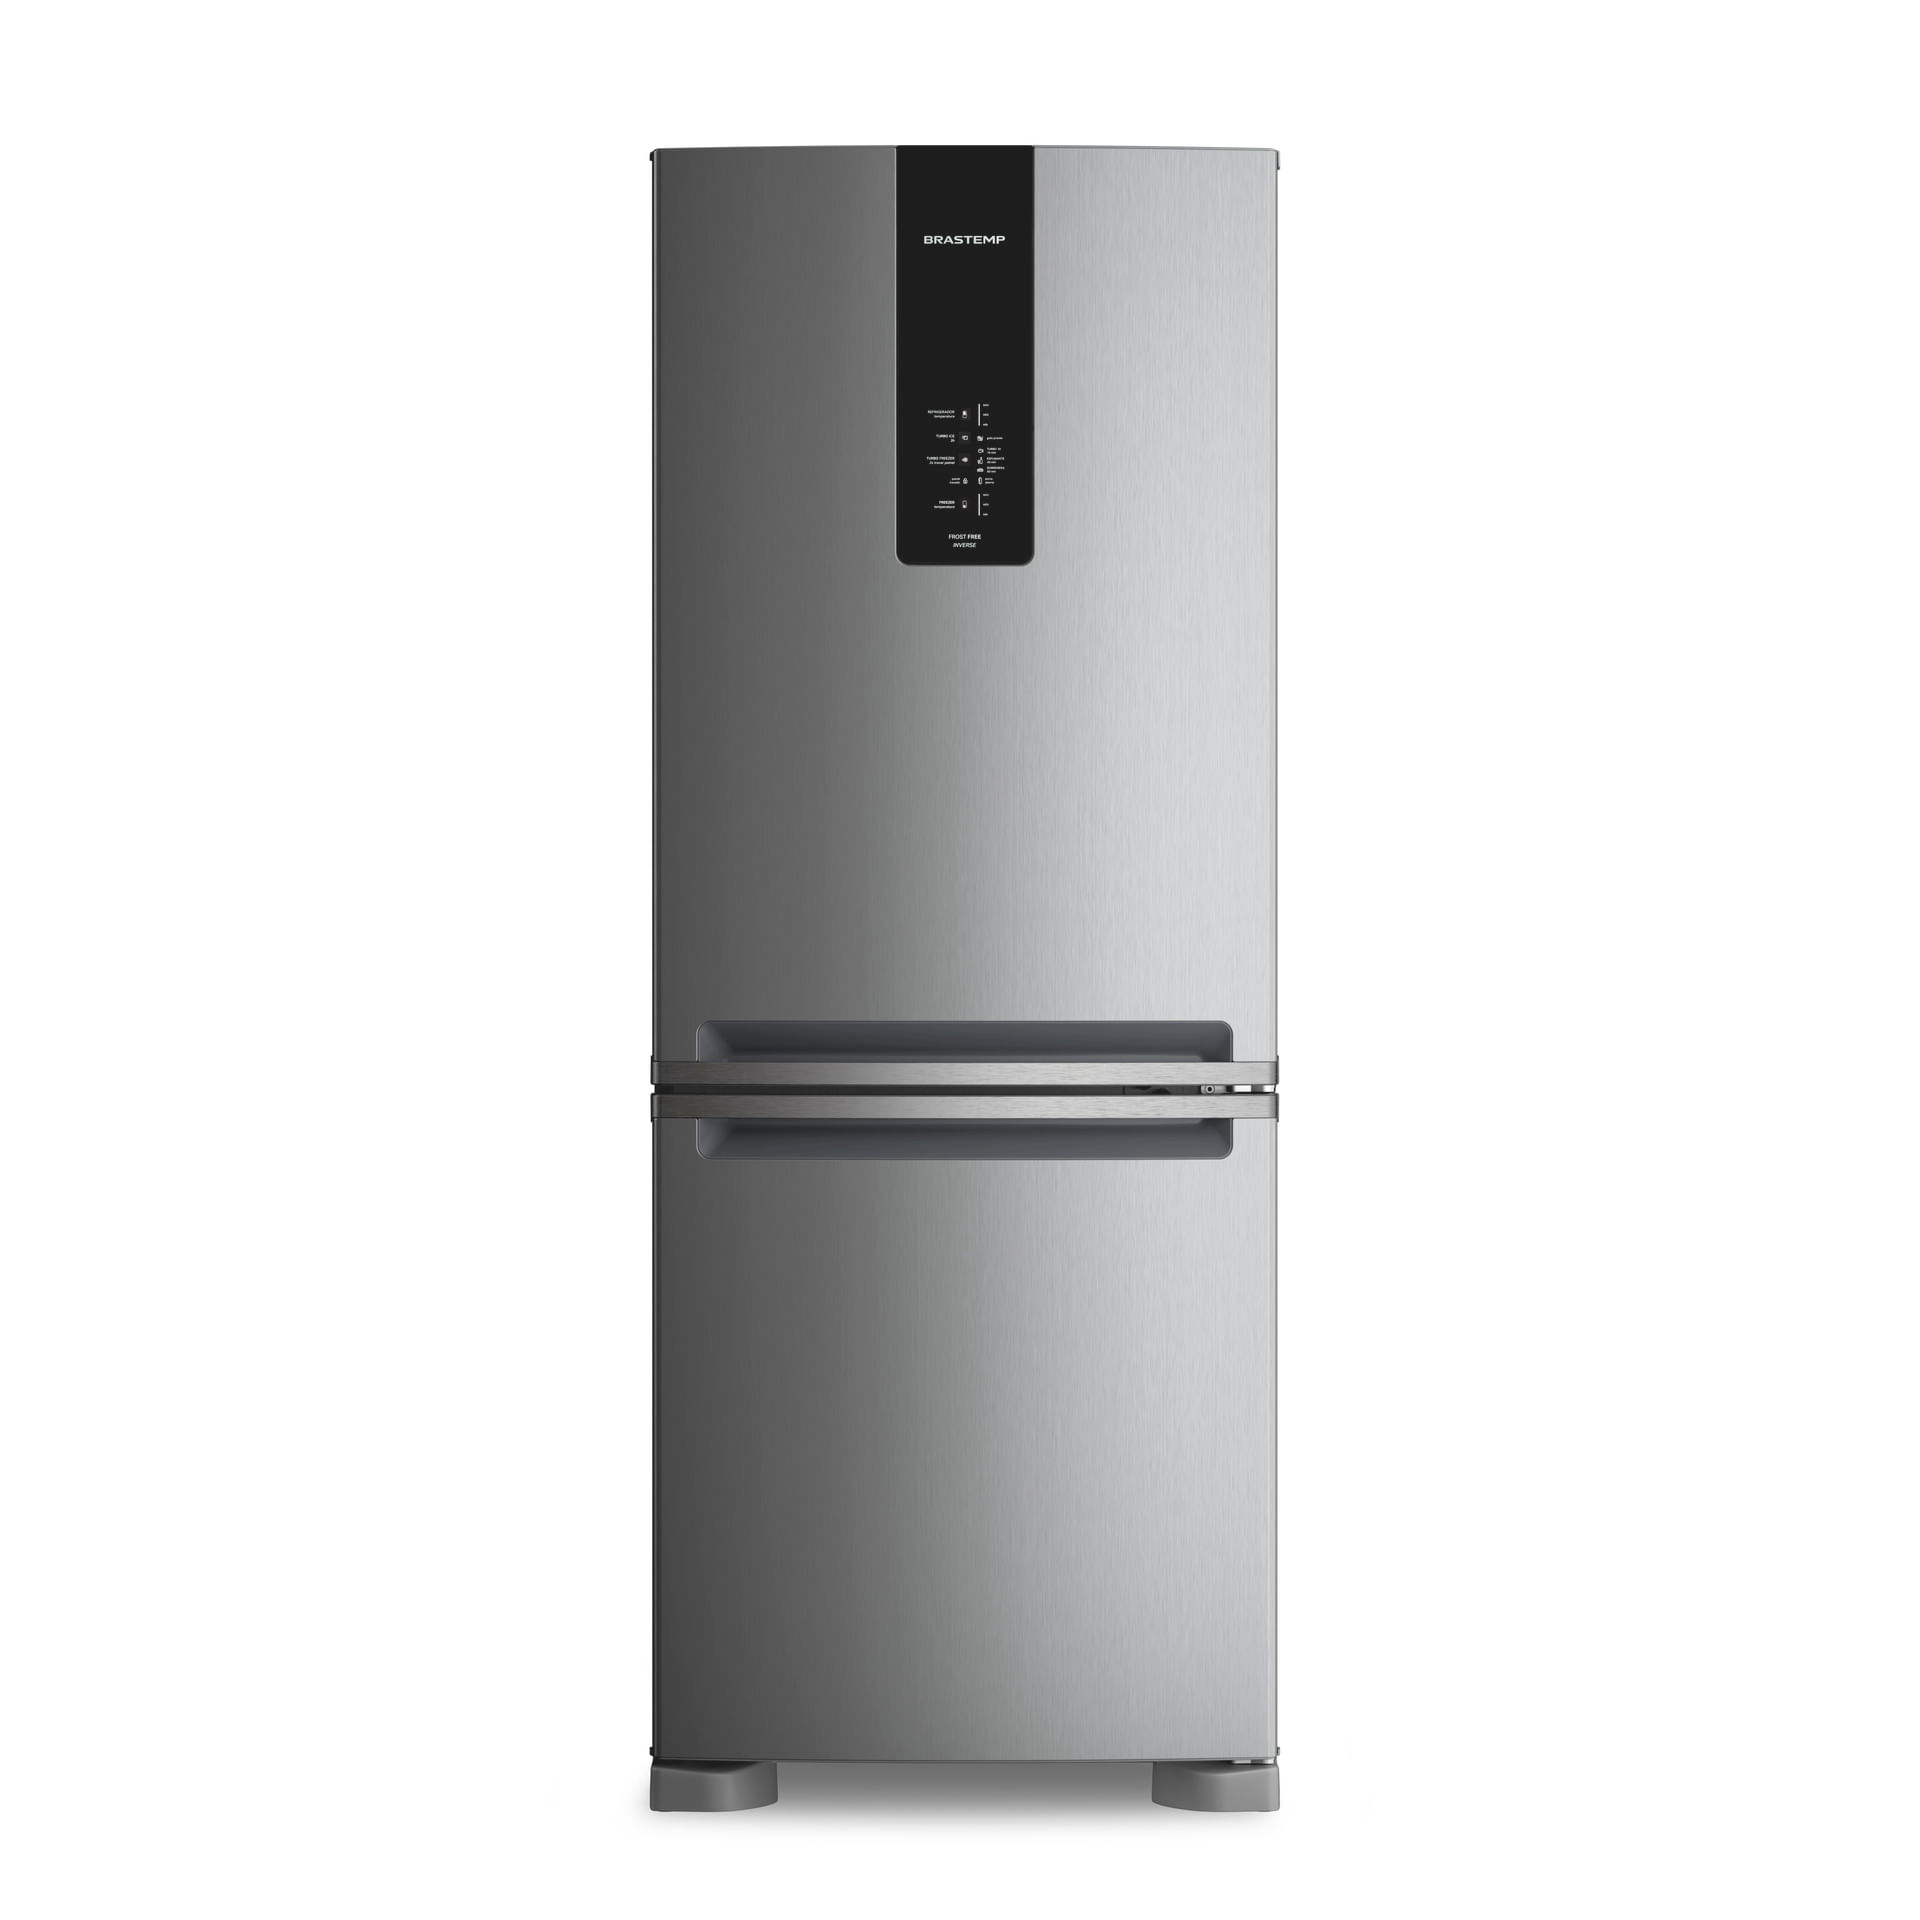 Geladeira/refrigerador 447 Litros 2 Portas Inox - Brastemp - 220v - Bre57fkbna